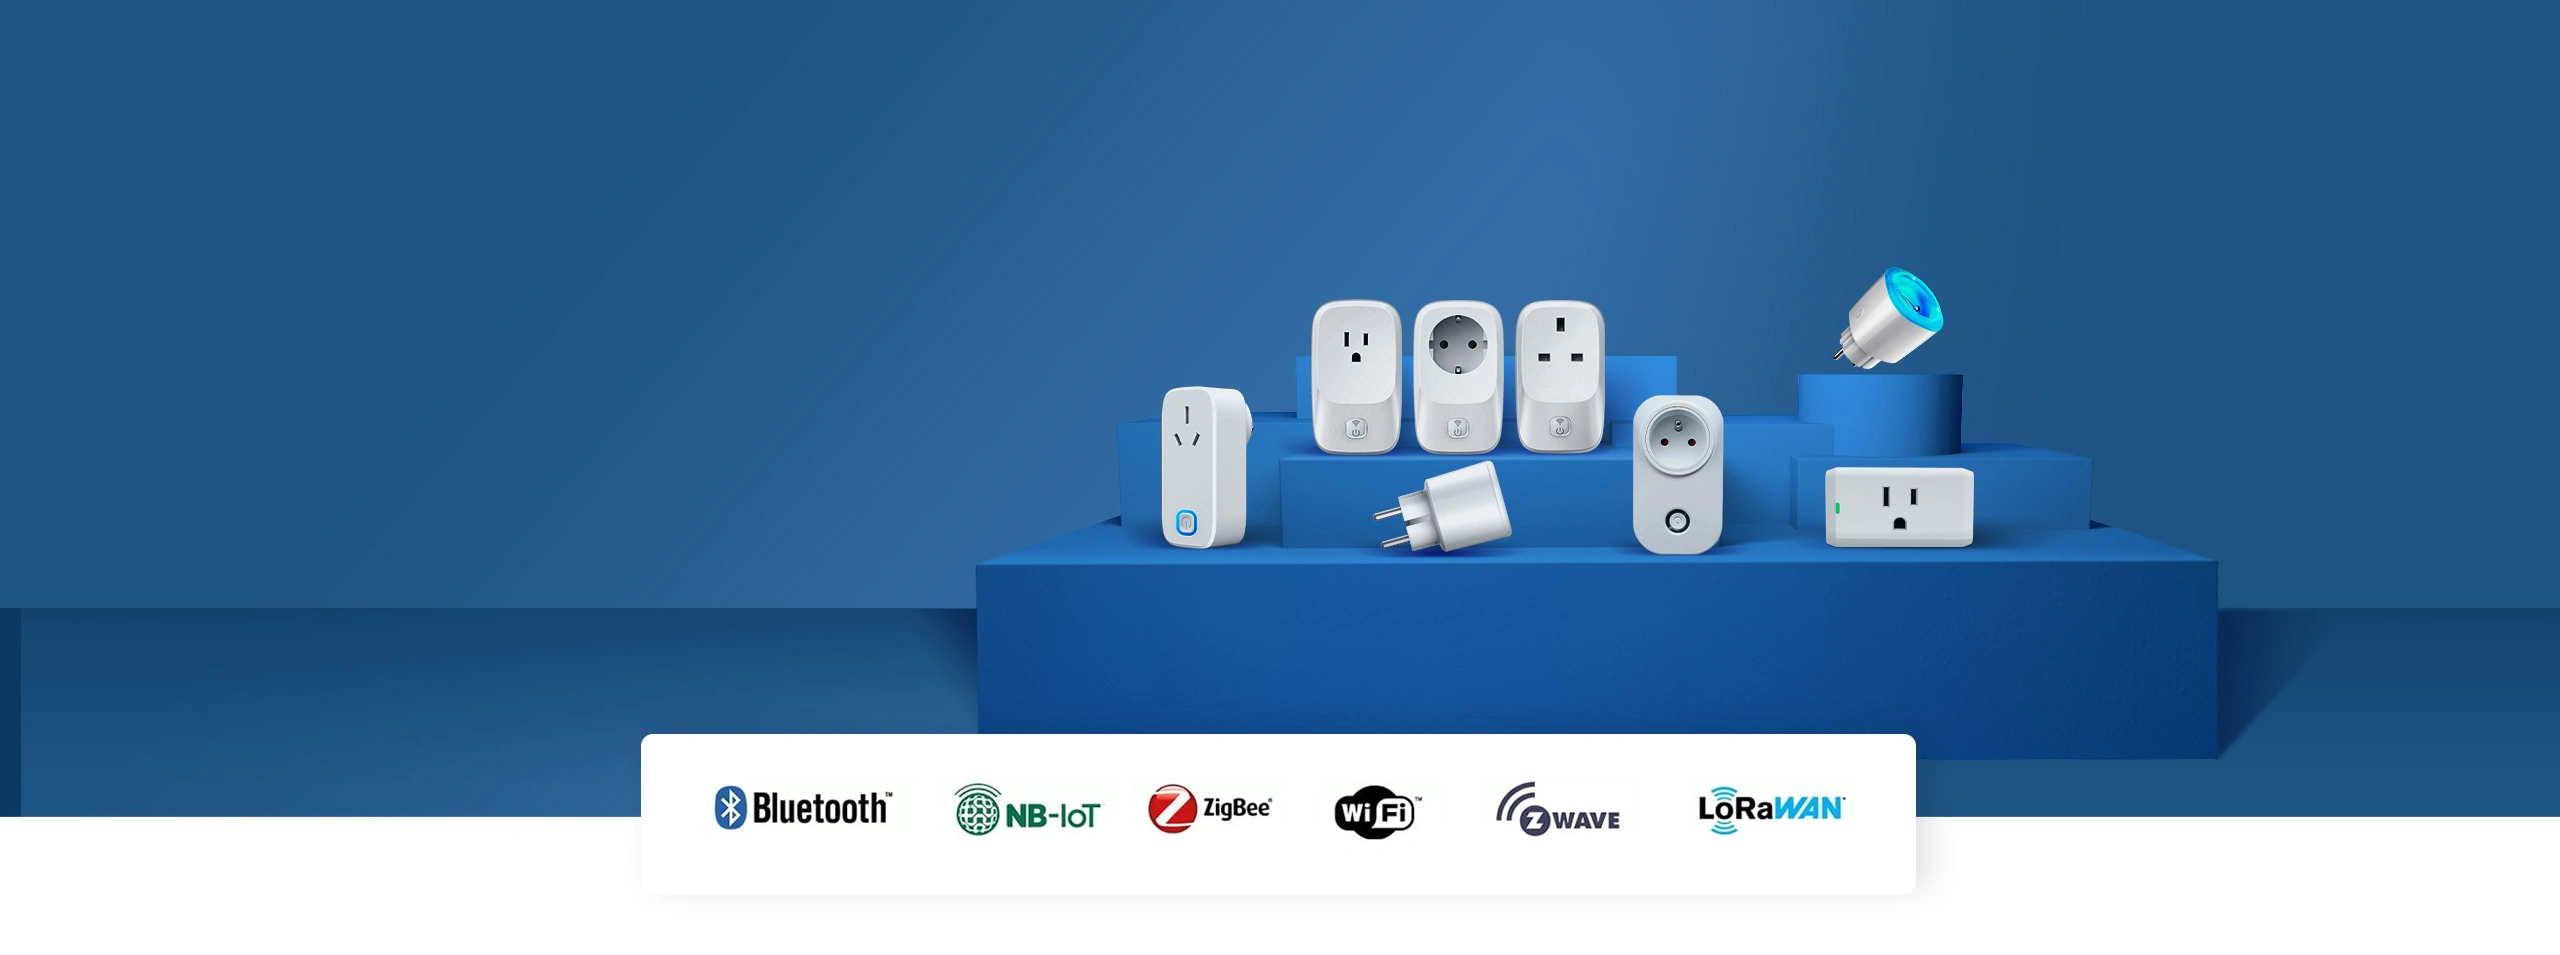 IoT smart outlet socket banner